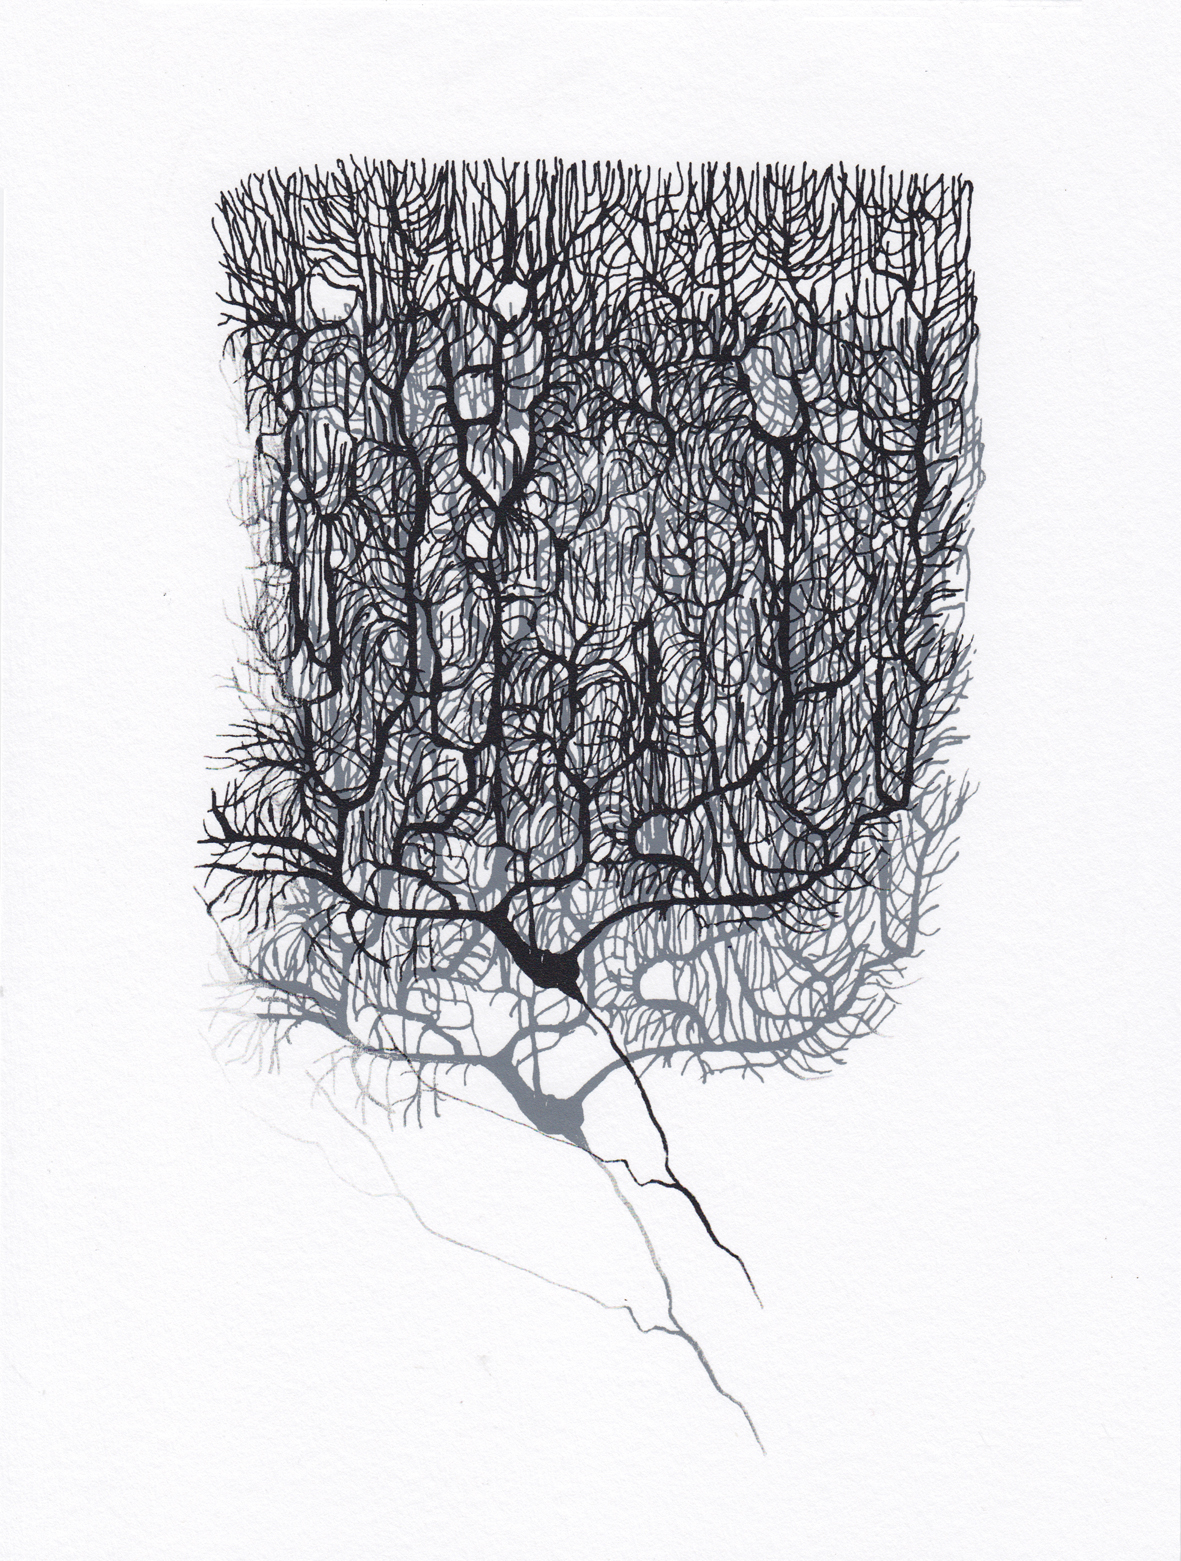 Anatomy of a Purkinje neuron inspired by Santiago Ramón y Cajal, Dorota Piekorz, 2017